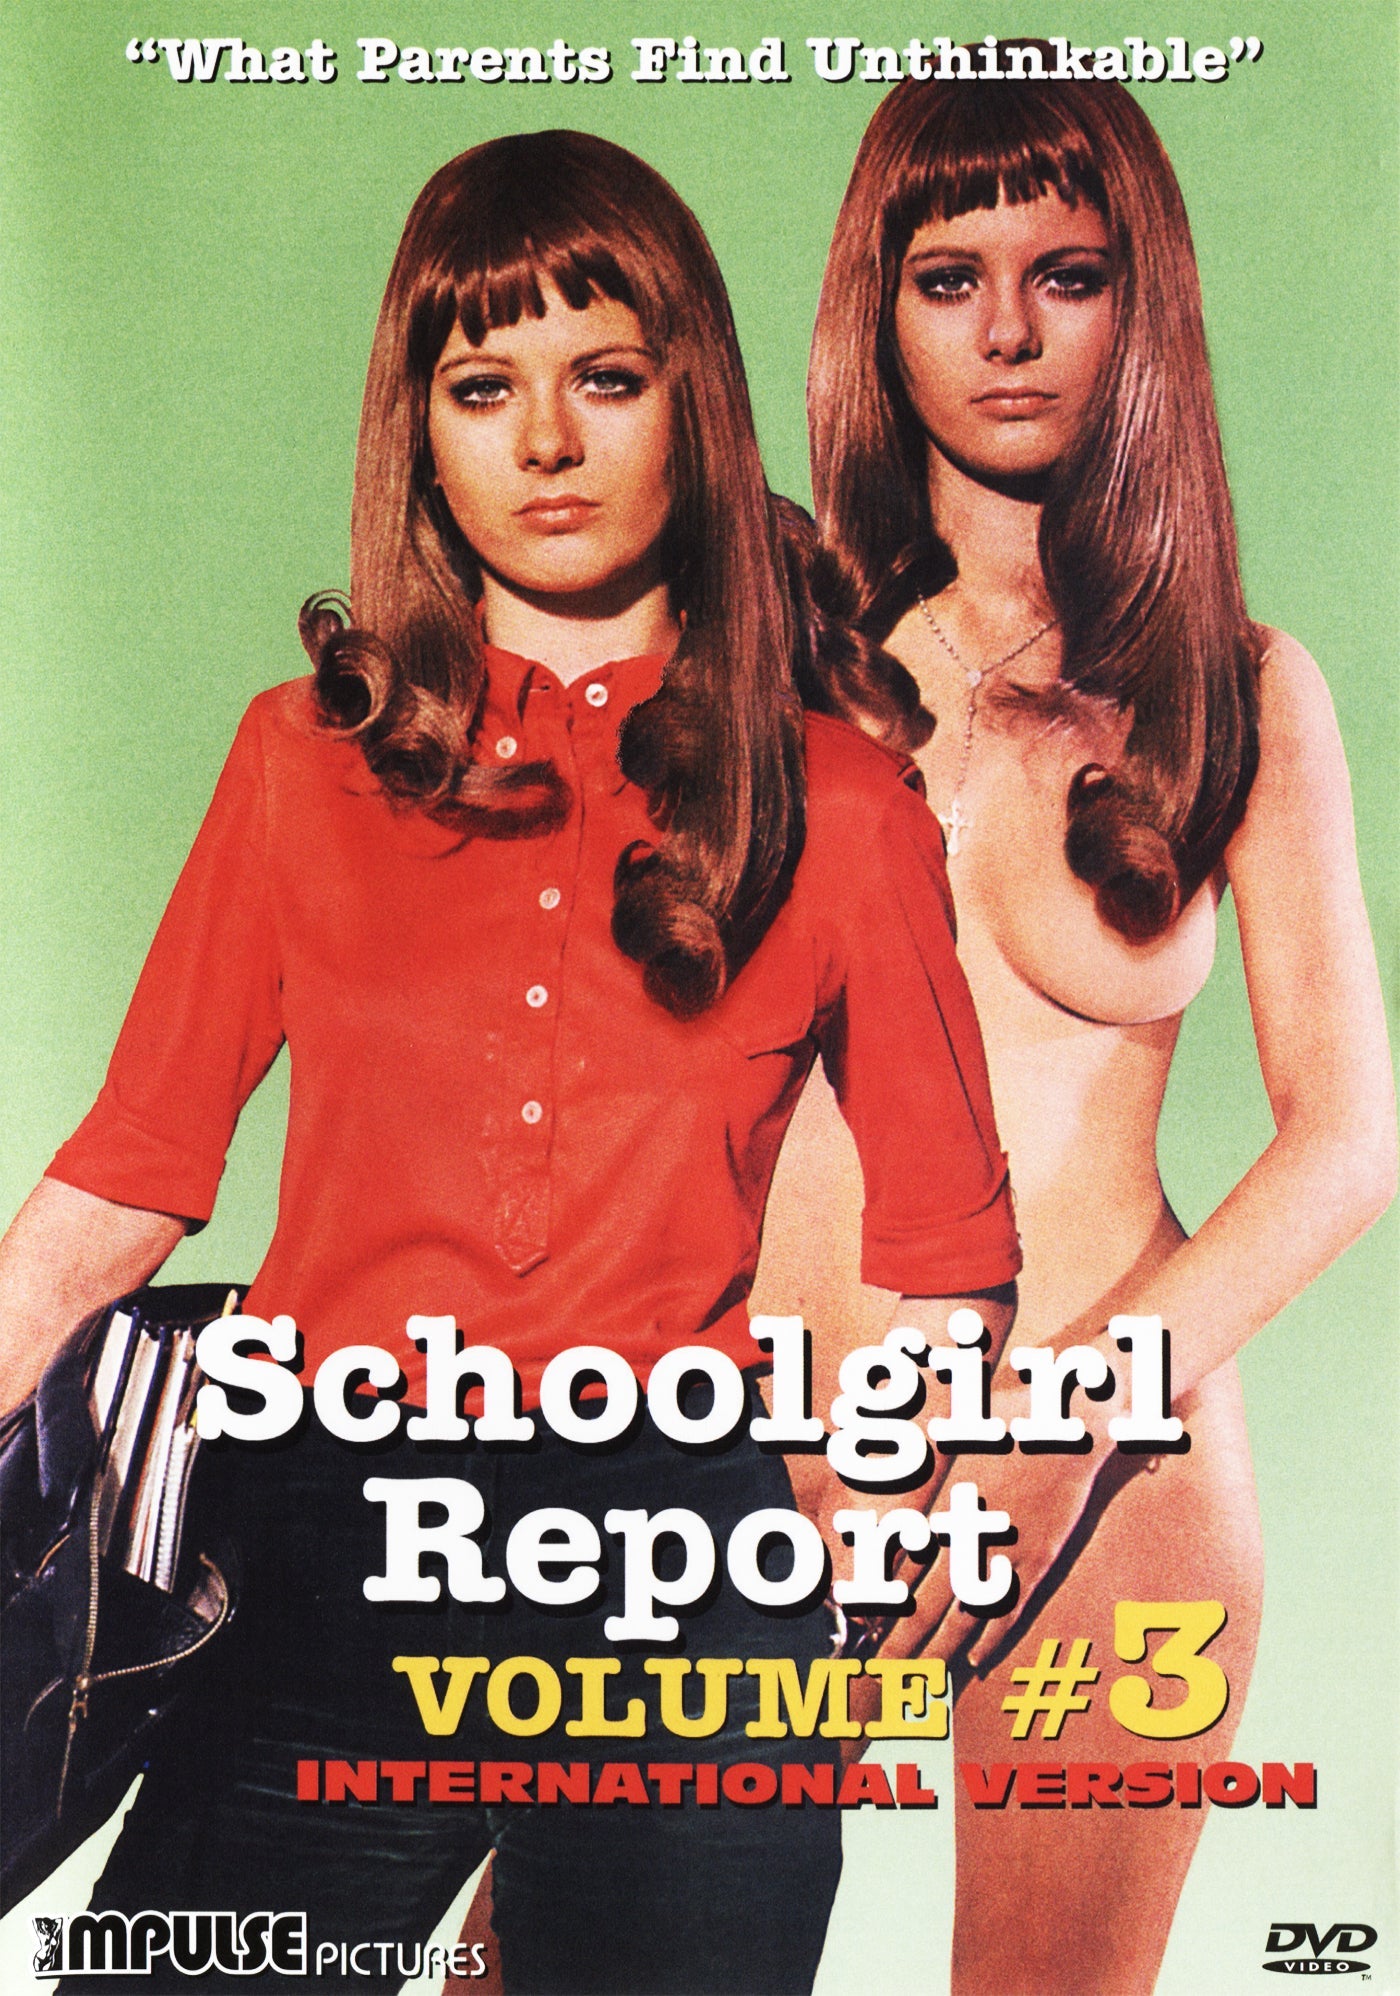 Schoolgirl Report Volume 3 (International Version) Dvd